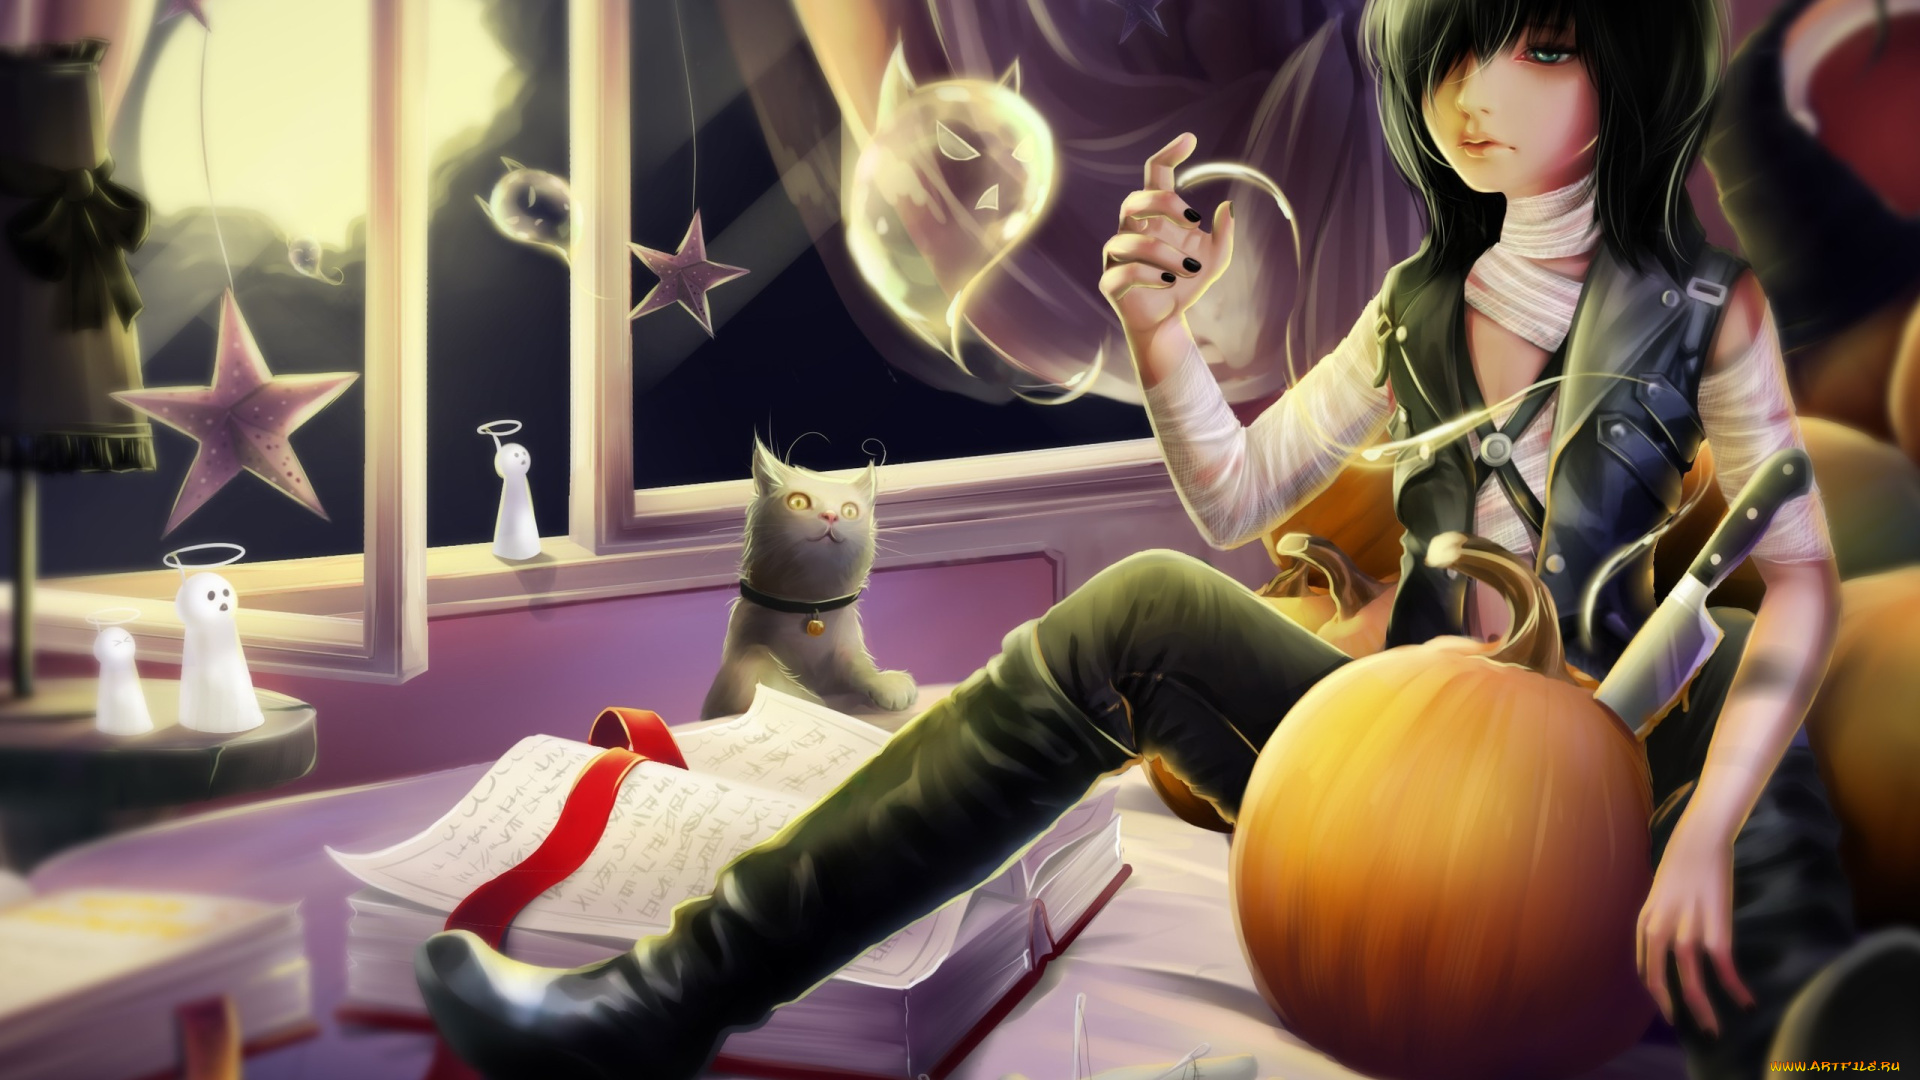 аниме, halloween, magic, хелуин, тыквы, шторы, звезды, ночь, парень, нож, луна, призраки, бинты, книга, кот